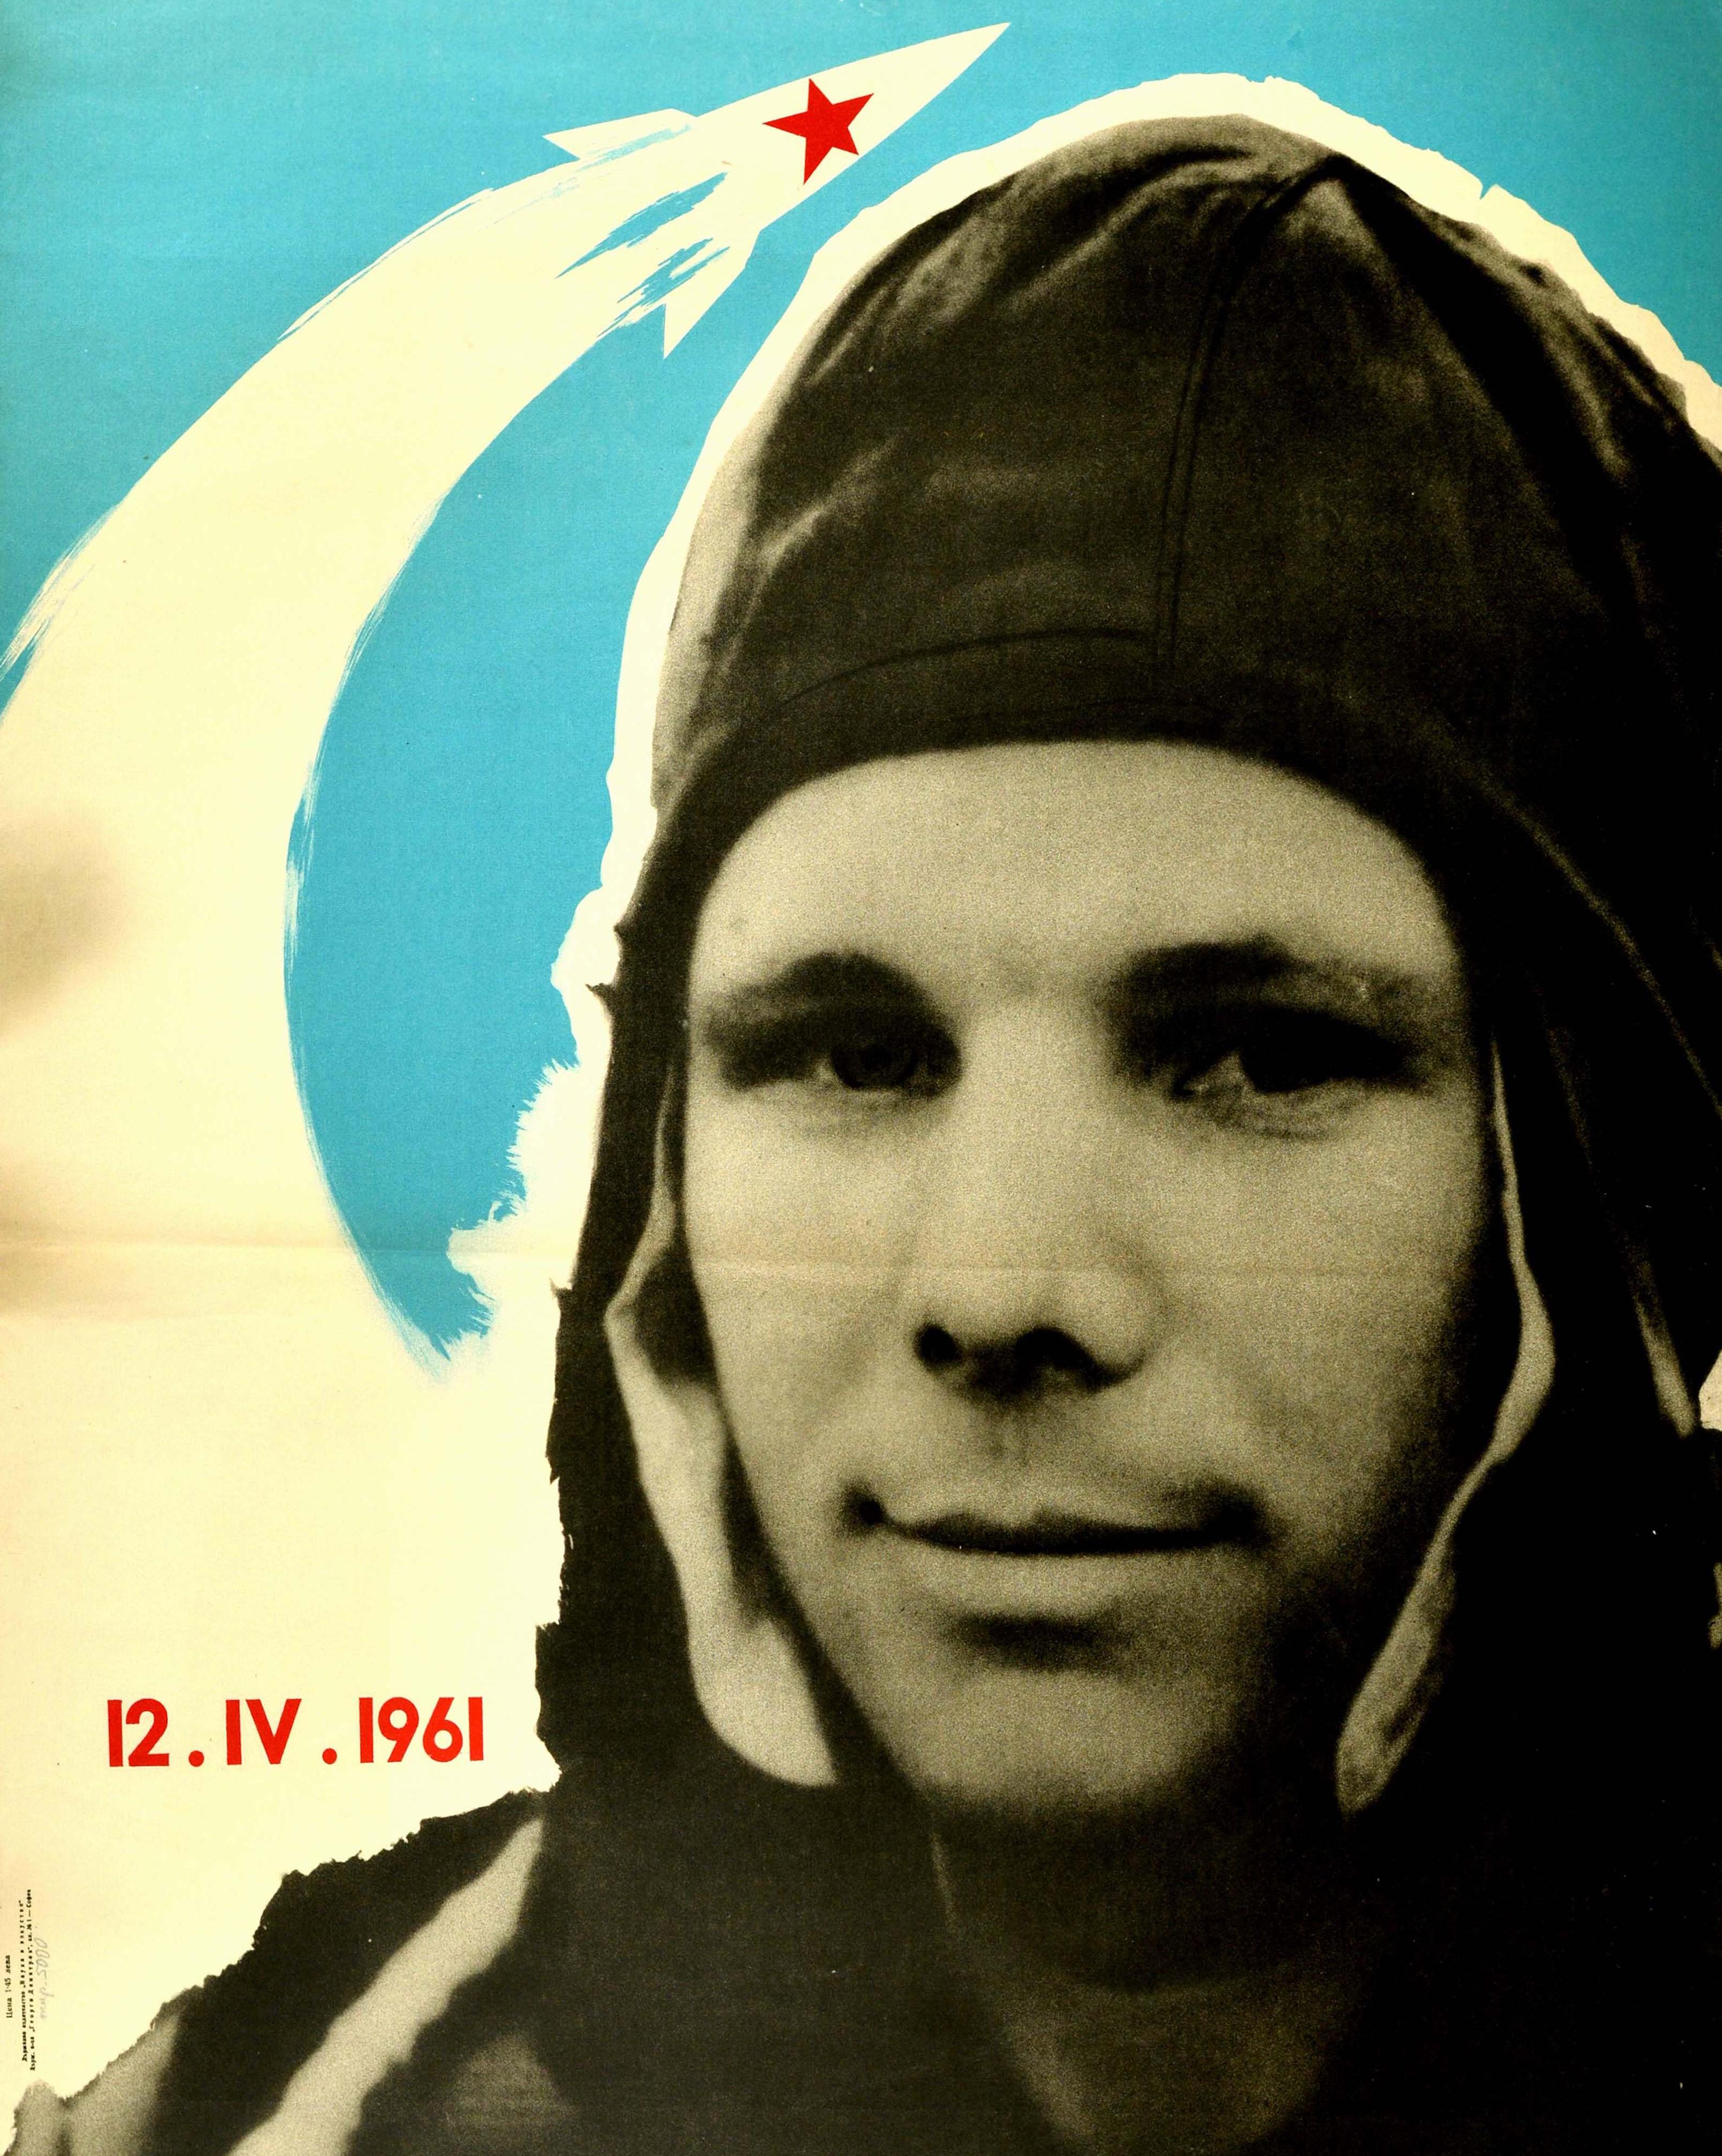 Originales altes Propagandaplakat aus dem sozialistischen Bulgarien - Ruhm für den ersten Kosmonautenpiloten Major Juri Gagarin! - mit einer Schwarz-Weiß-Fotografie des ersten Menschen im Weltraum am 12. April 1961. Der Pilot und Kosmonaut Juri